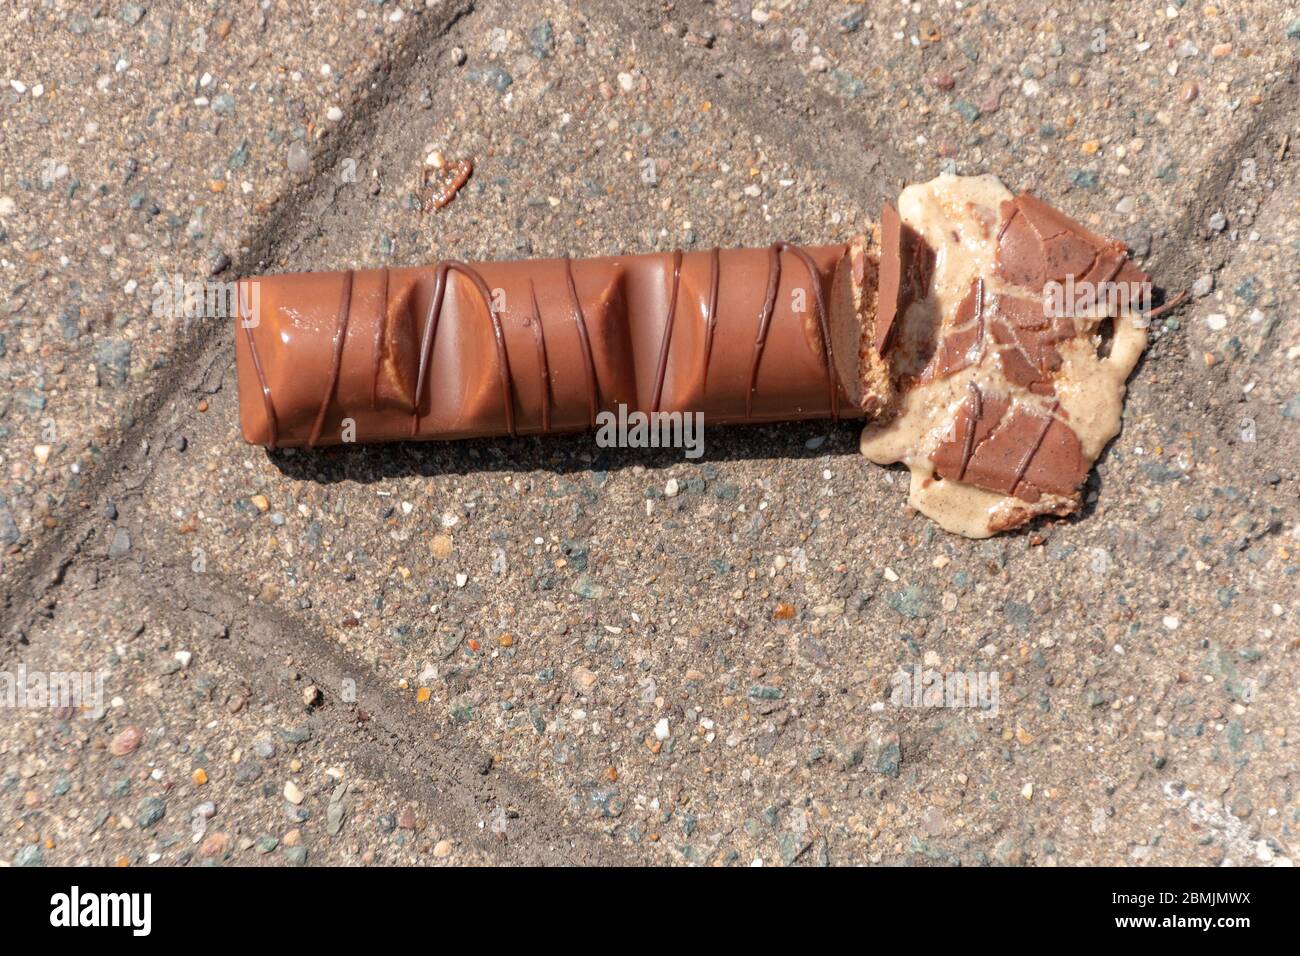 Eine Nahaufnahme einer Tafel Schokolade, die auf der einen Seite fallen gelassen und zerquetscht wurde Stockfoto